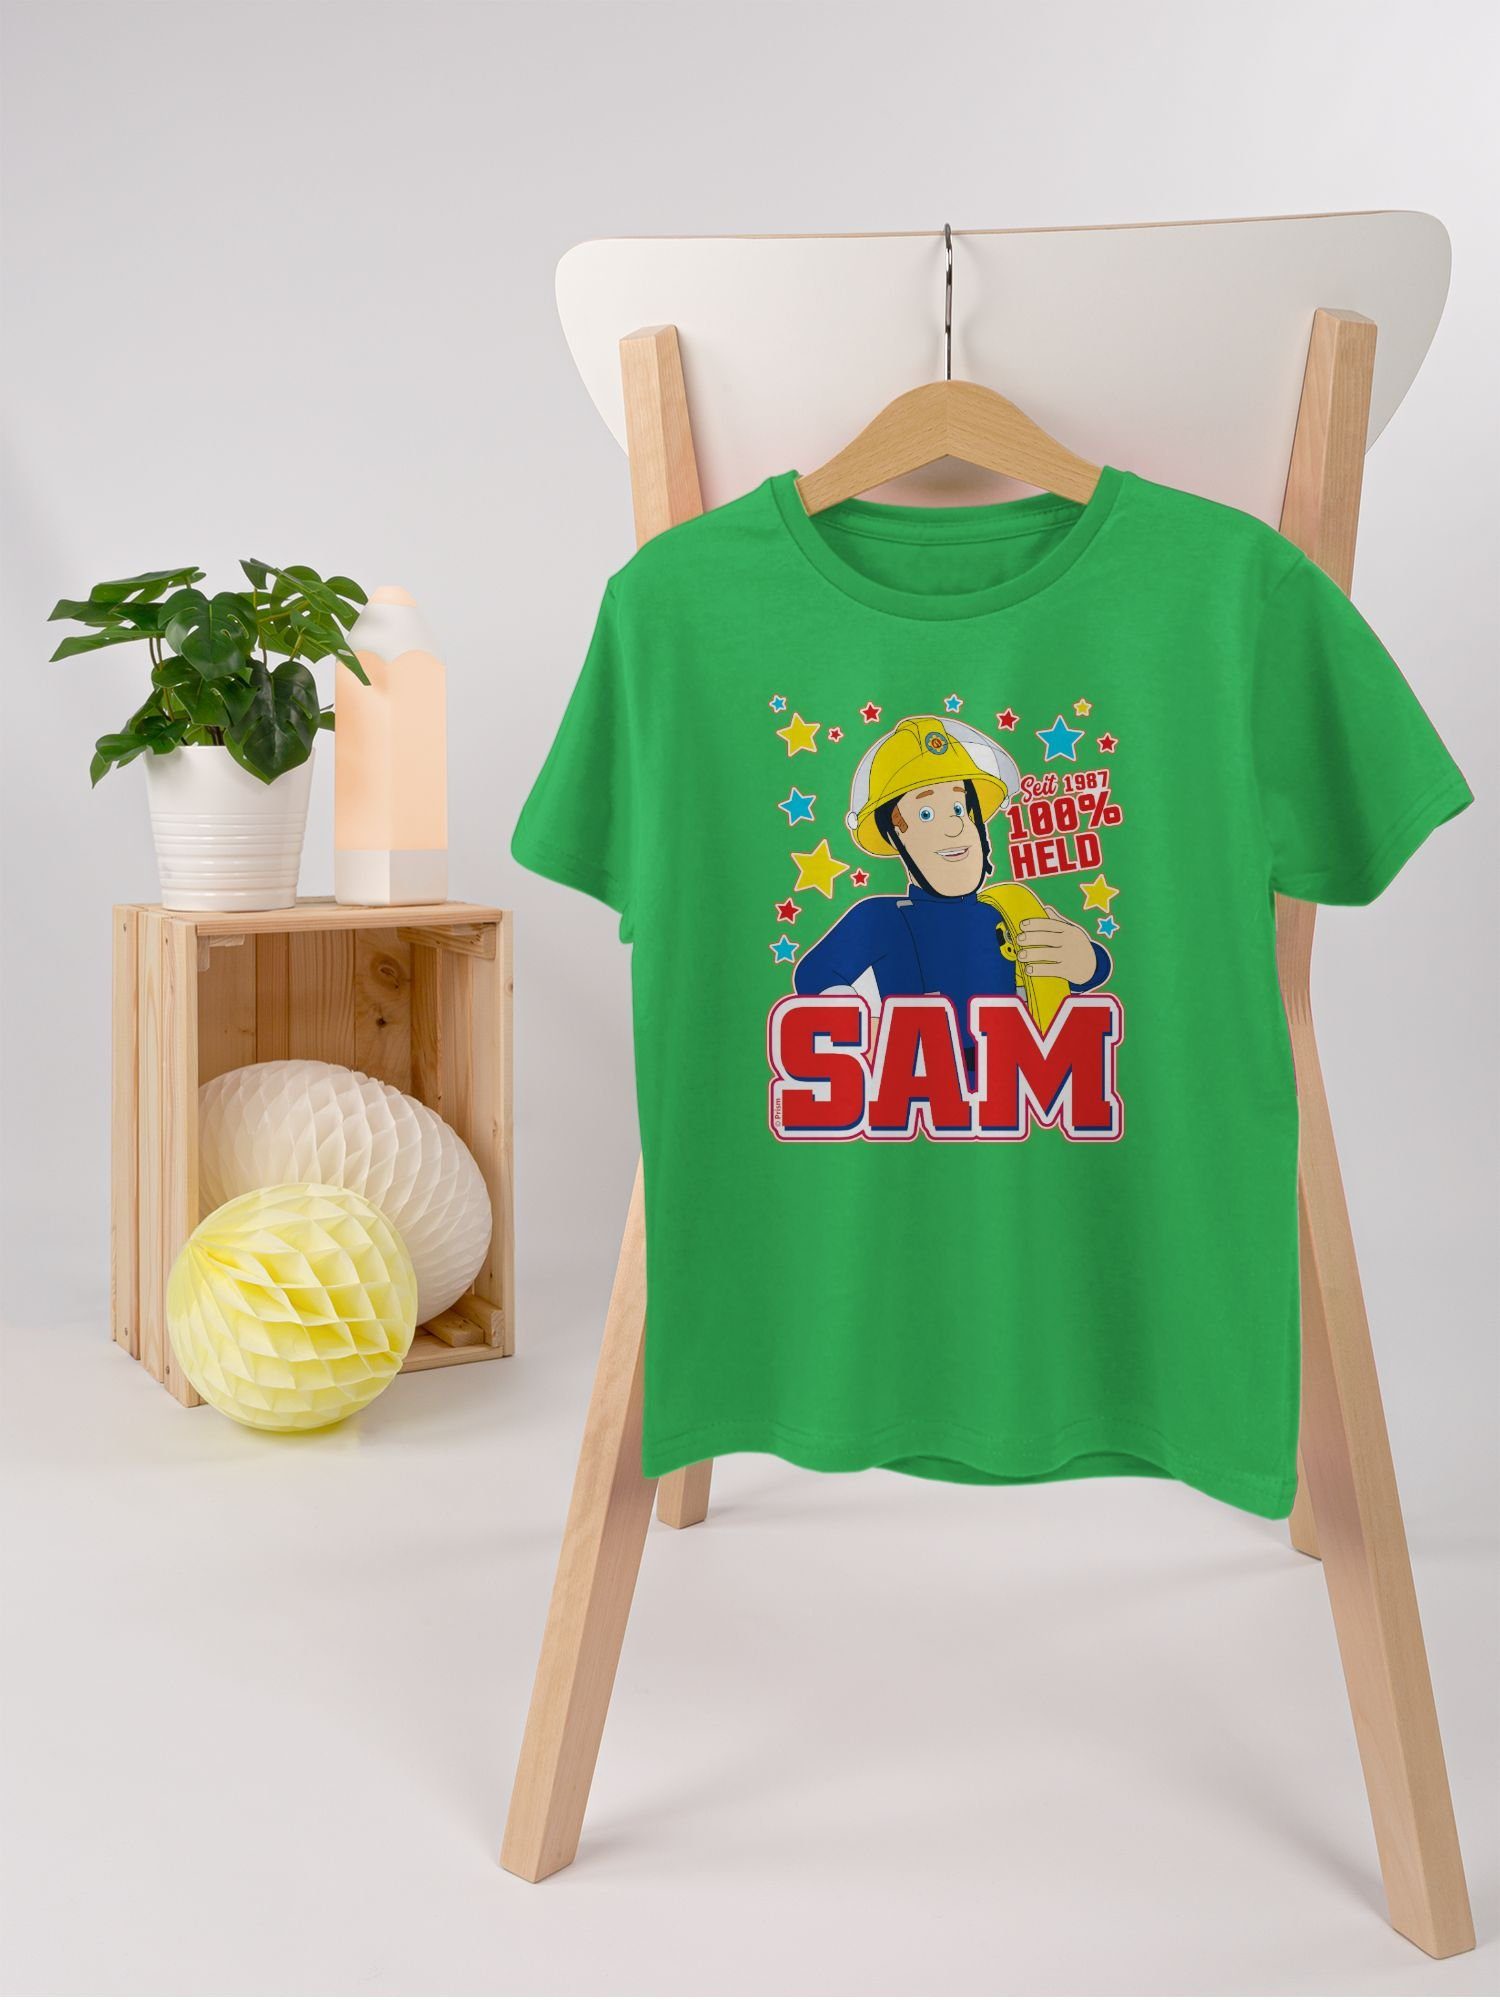 Held Sam - Seit 03 Sam T-Shirt Feuerwehrmann 1987 - 100% Jungen Grün Shirtracer